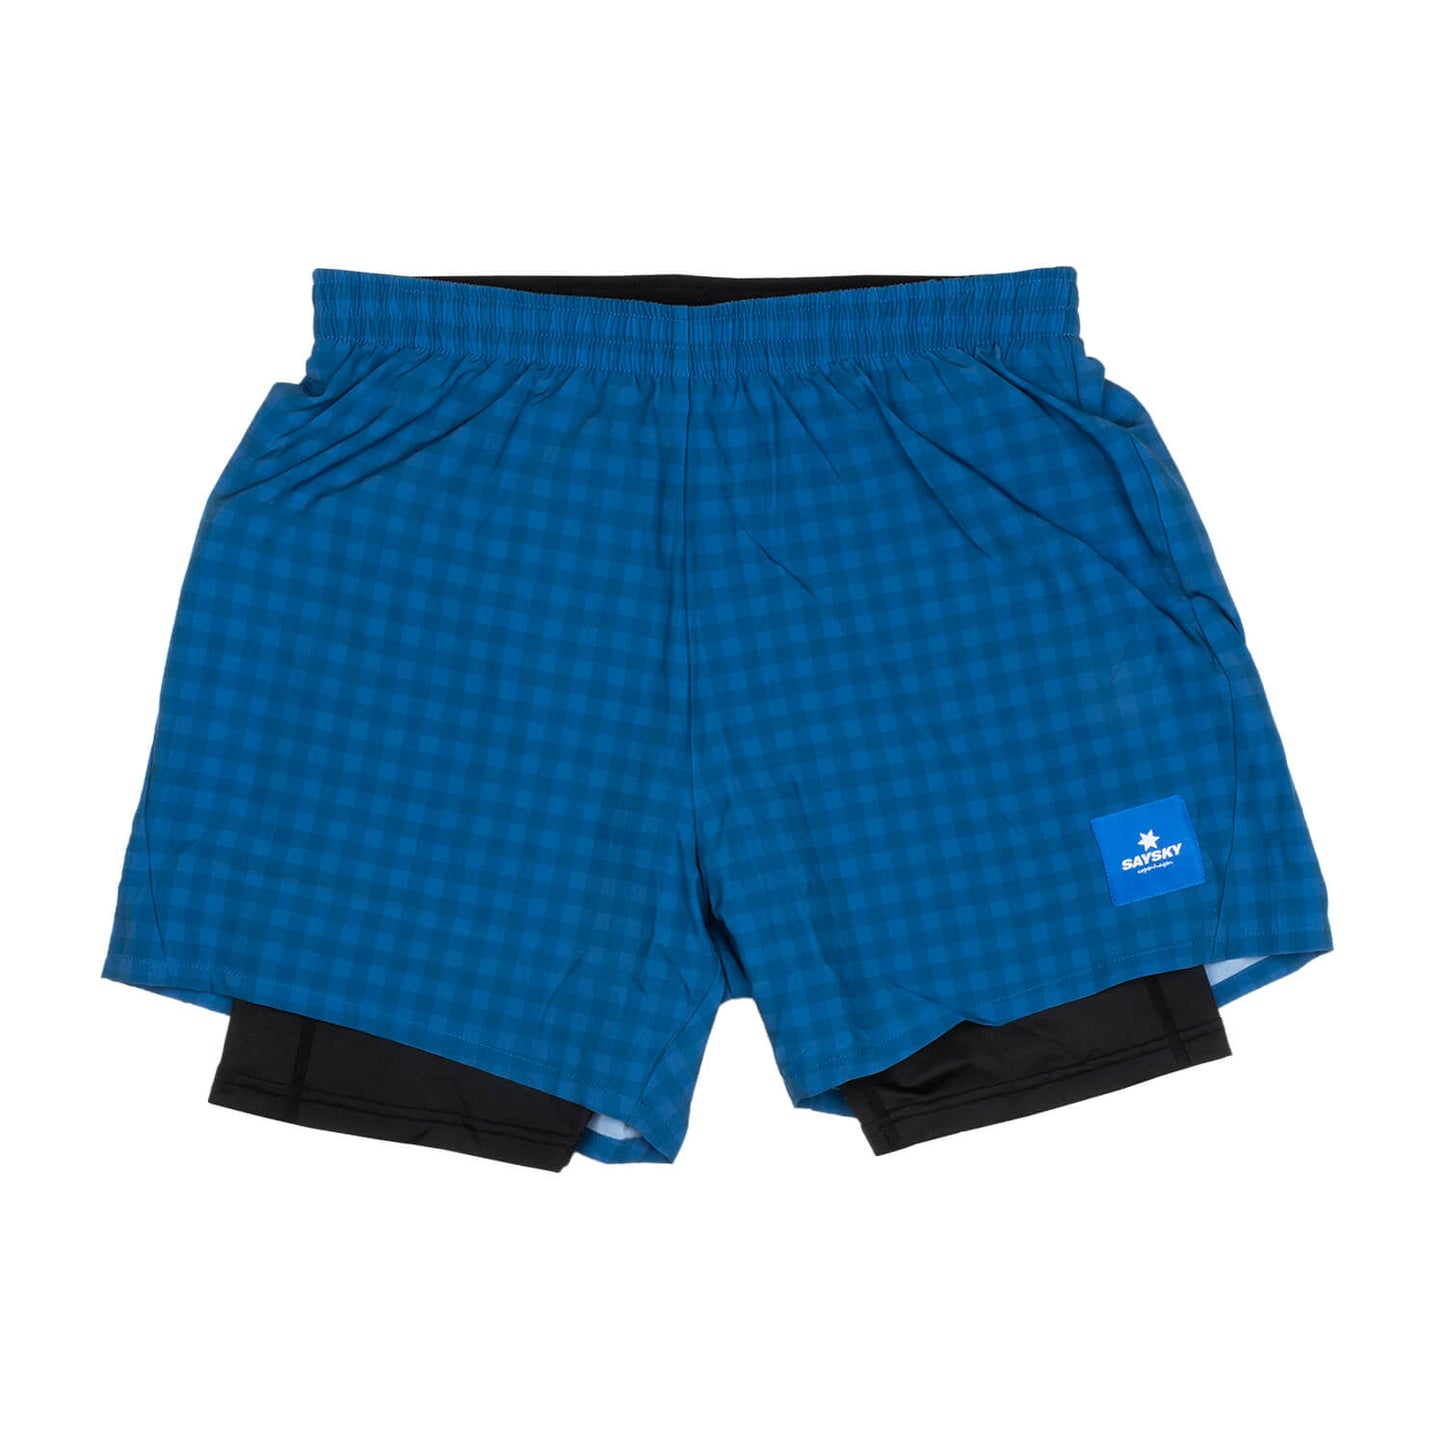 ランニングショーツ FMRSH01 Checker 2-in-1 Shorts - Blue Checkerboard [ユニセックス]